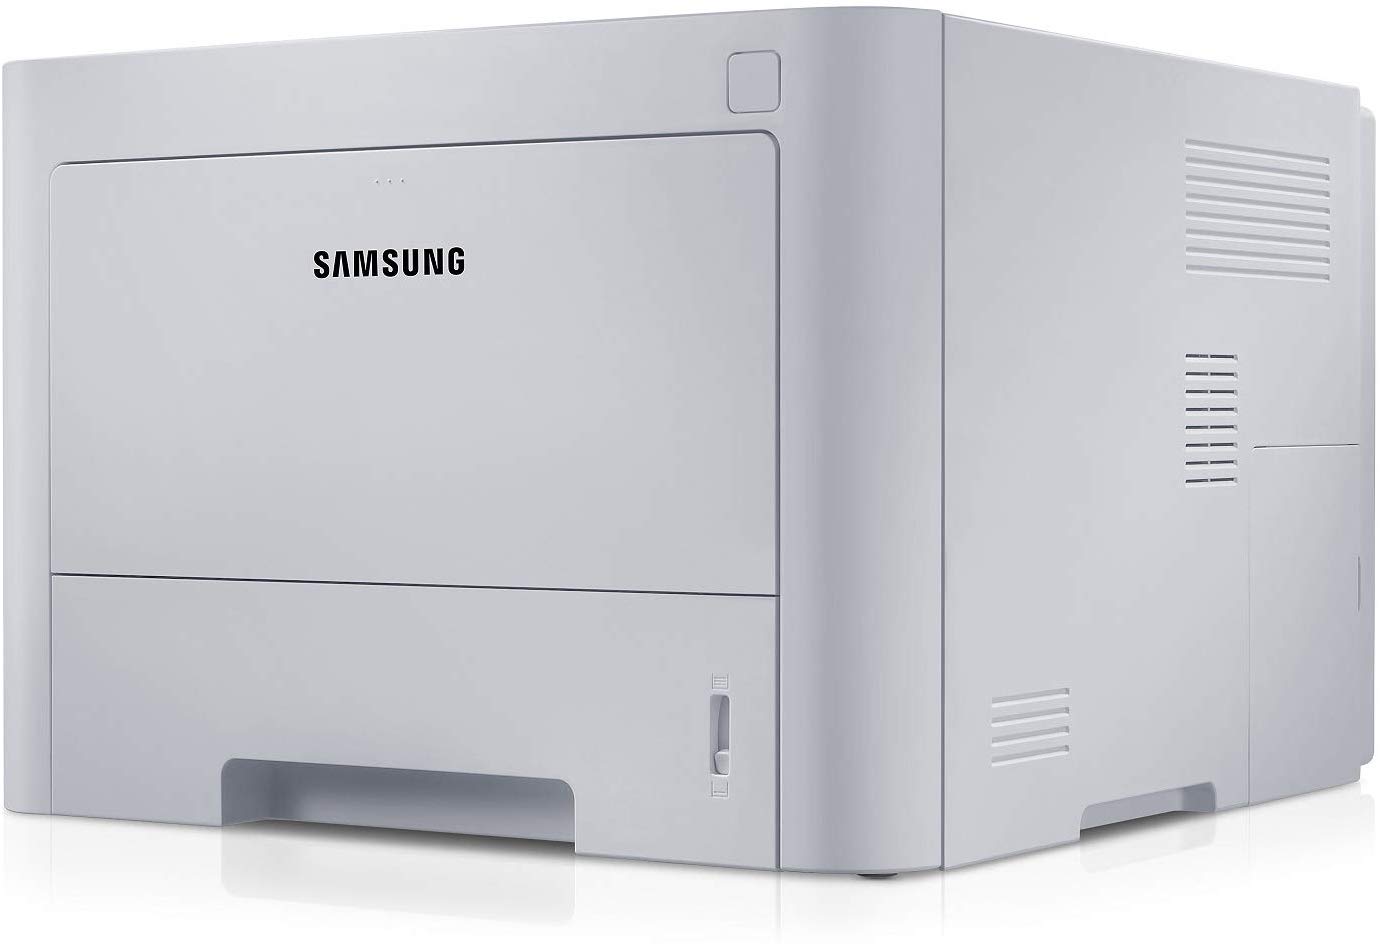 Samsung M3820Nd Laserdrucker, Schwarz/Weiß-Netzwerk, automatischer Schwarzweiß-Duplex